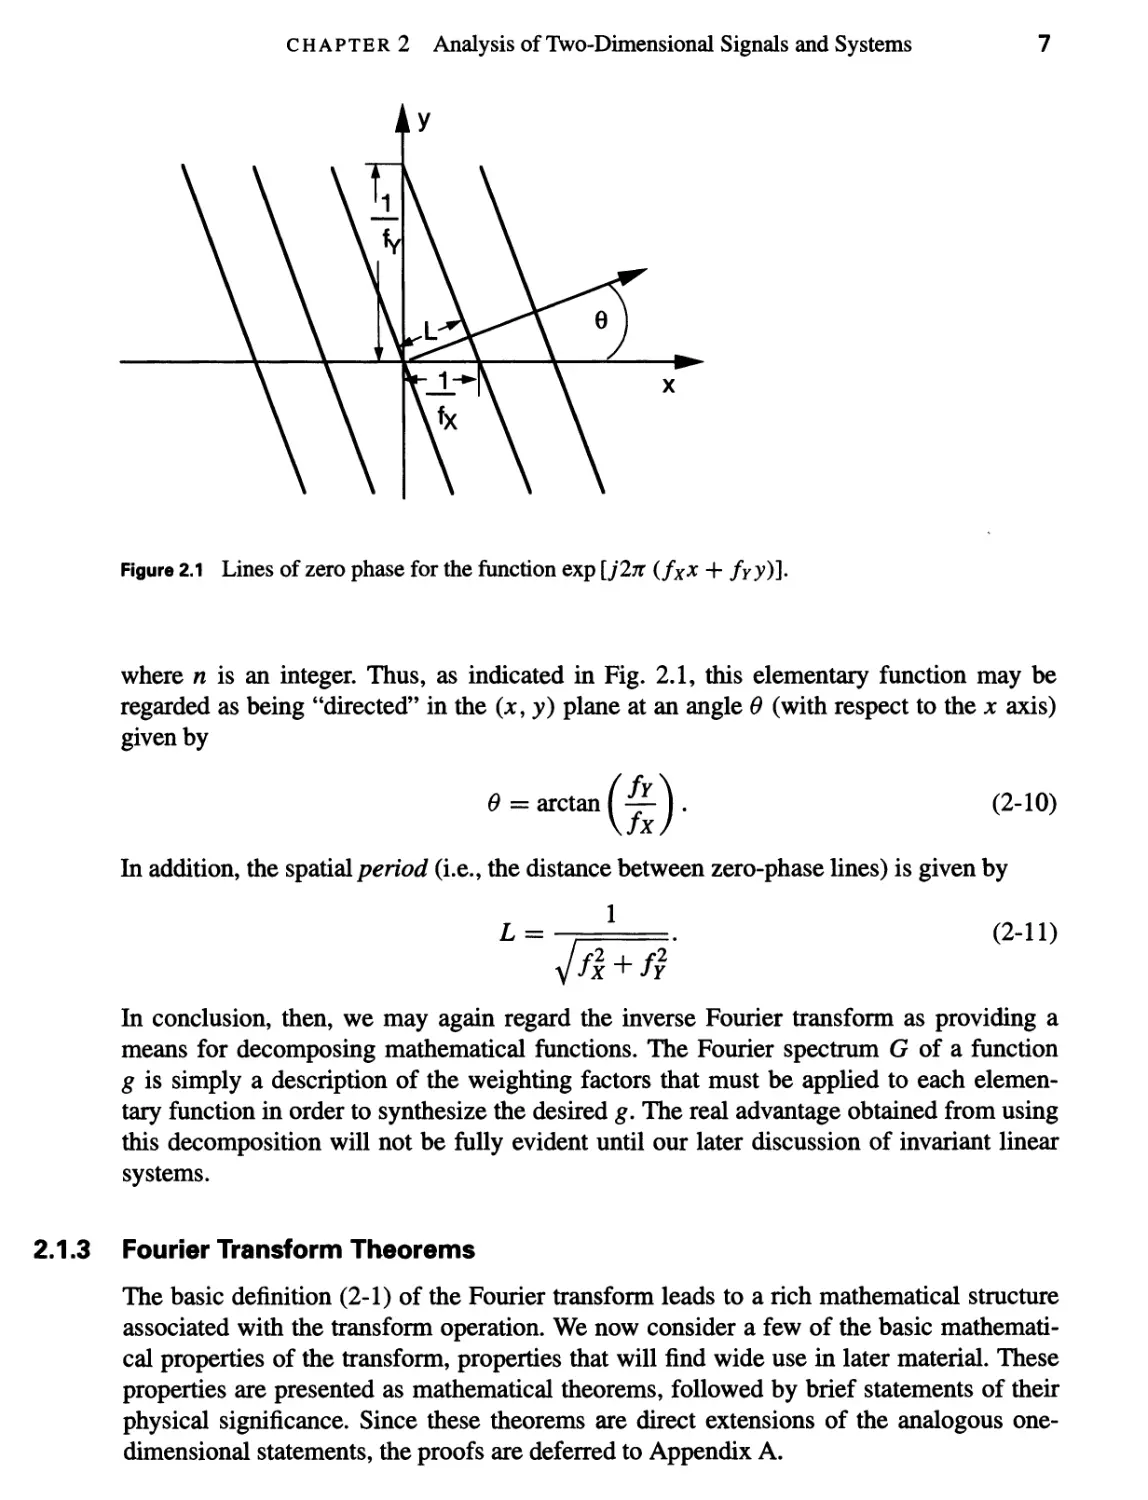 2.1.3 Fourier Transform Theorems 7